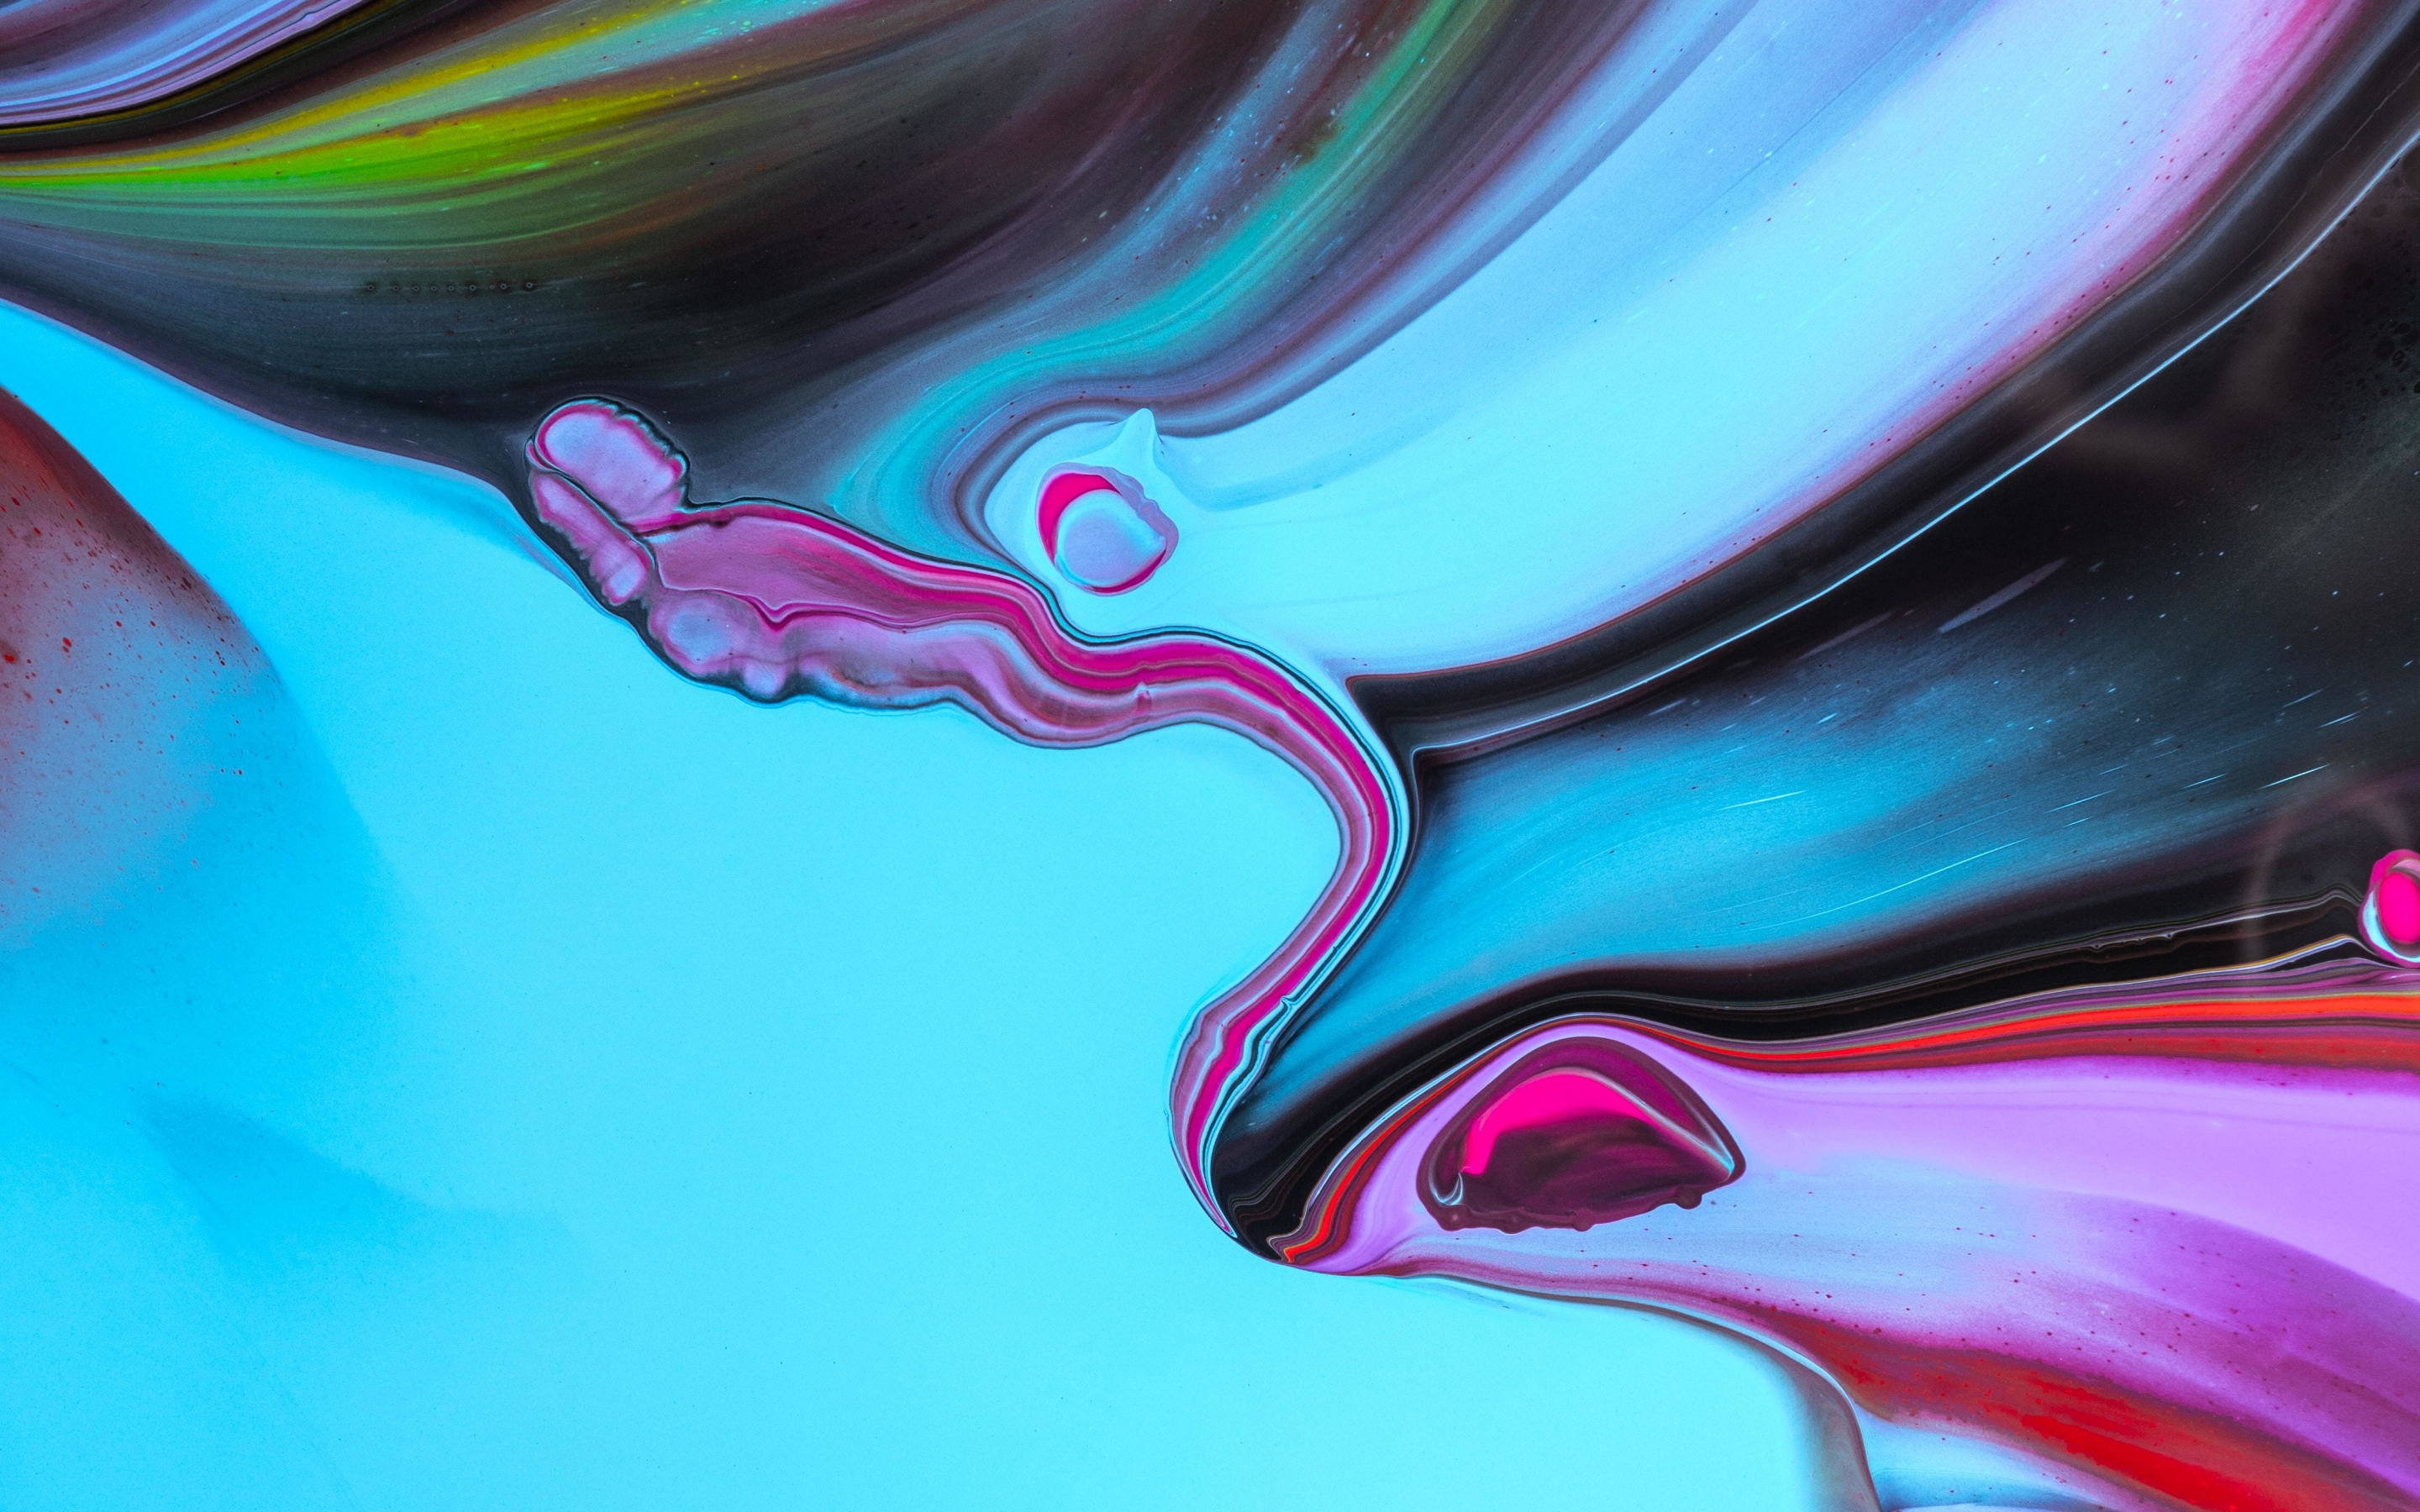 Paint, mixing liquid art, colorful, 2880x1800 wallpaper